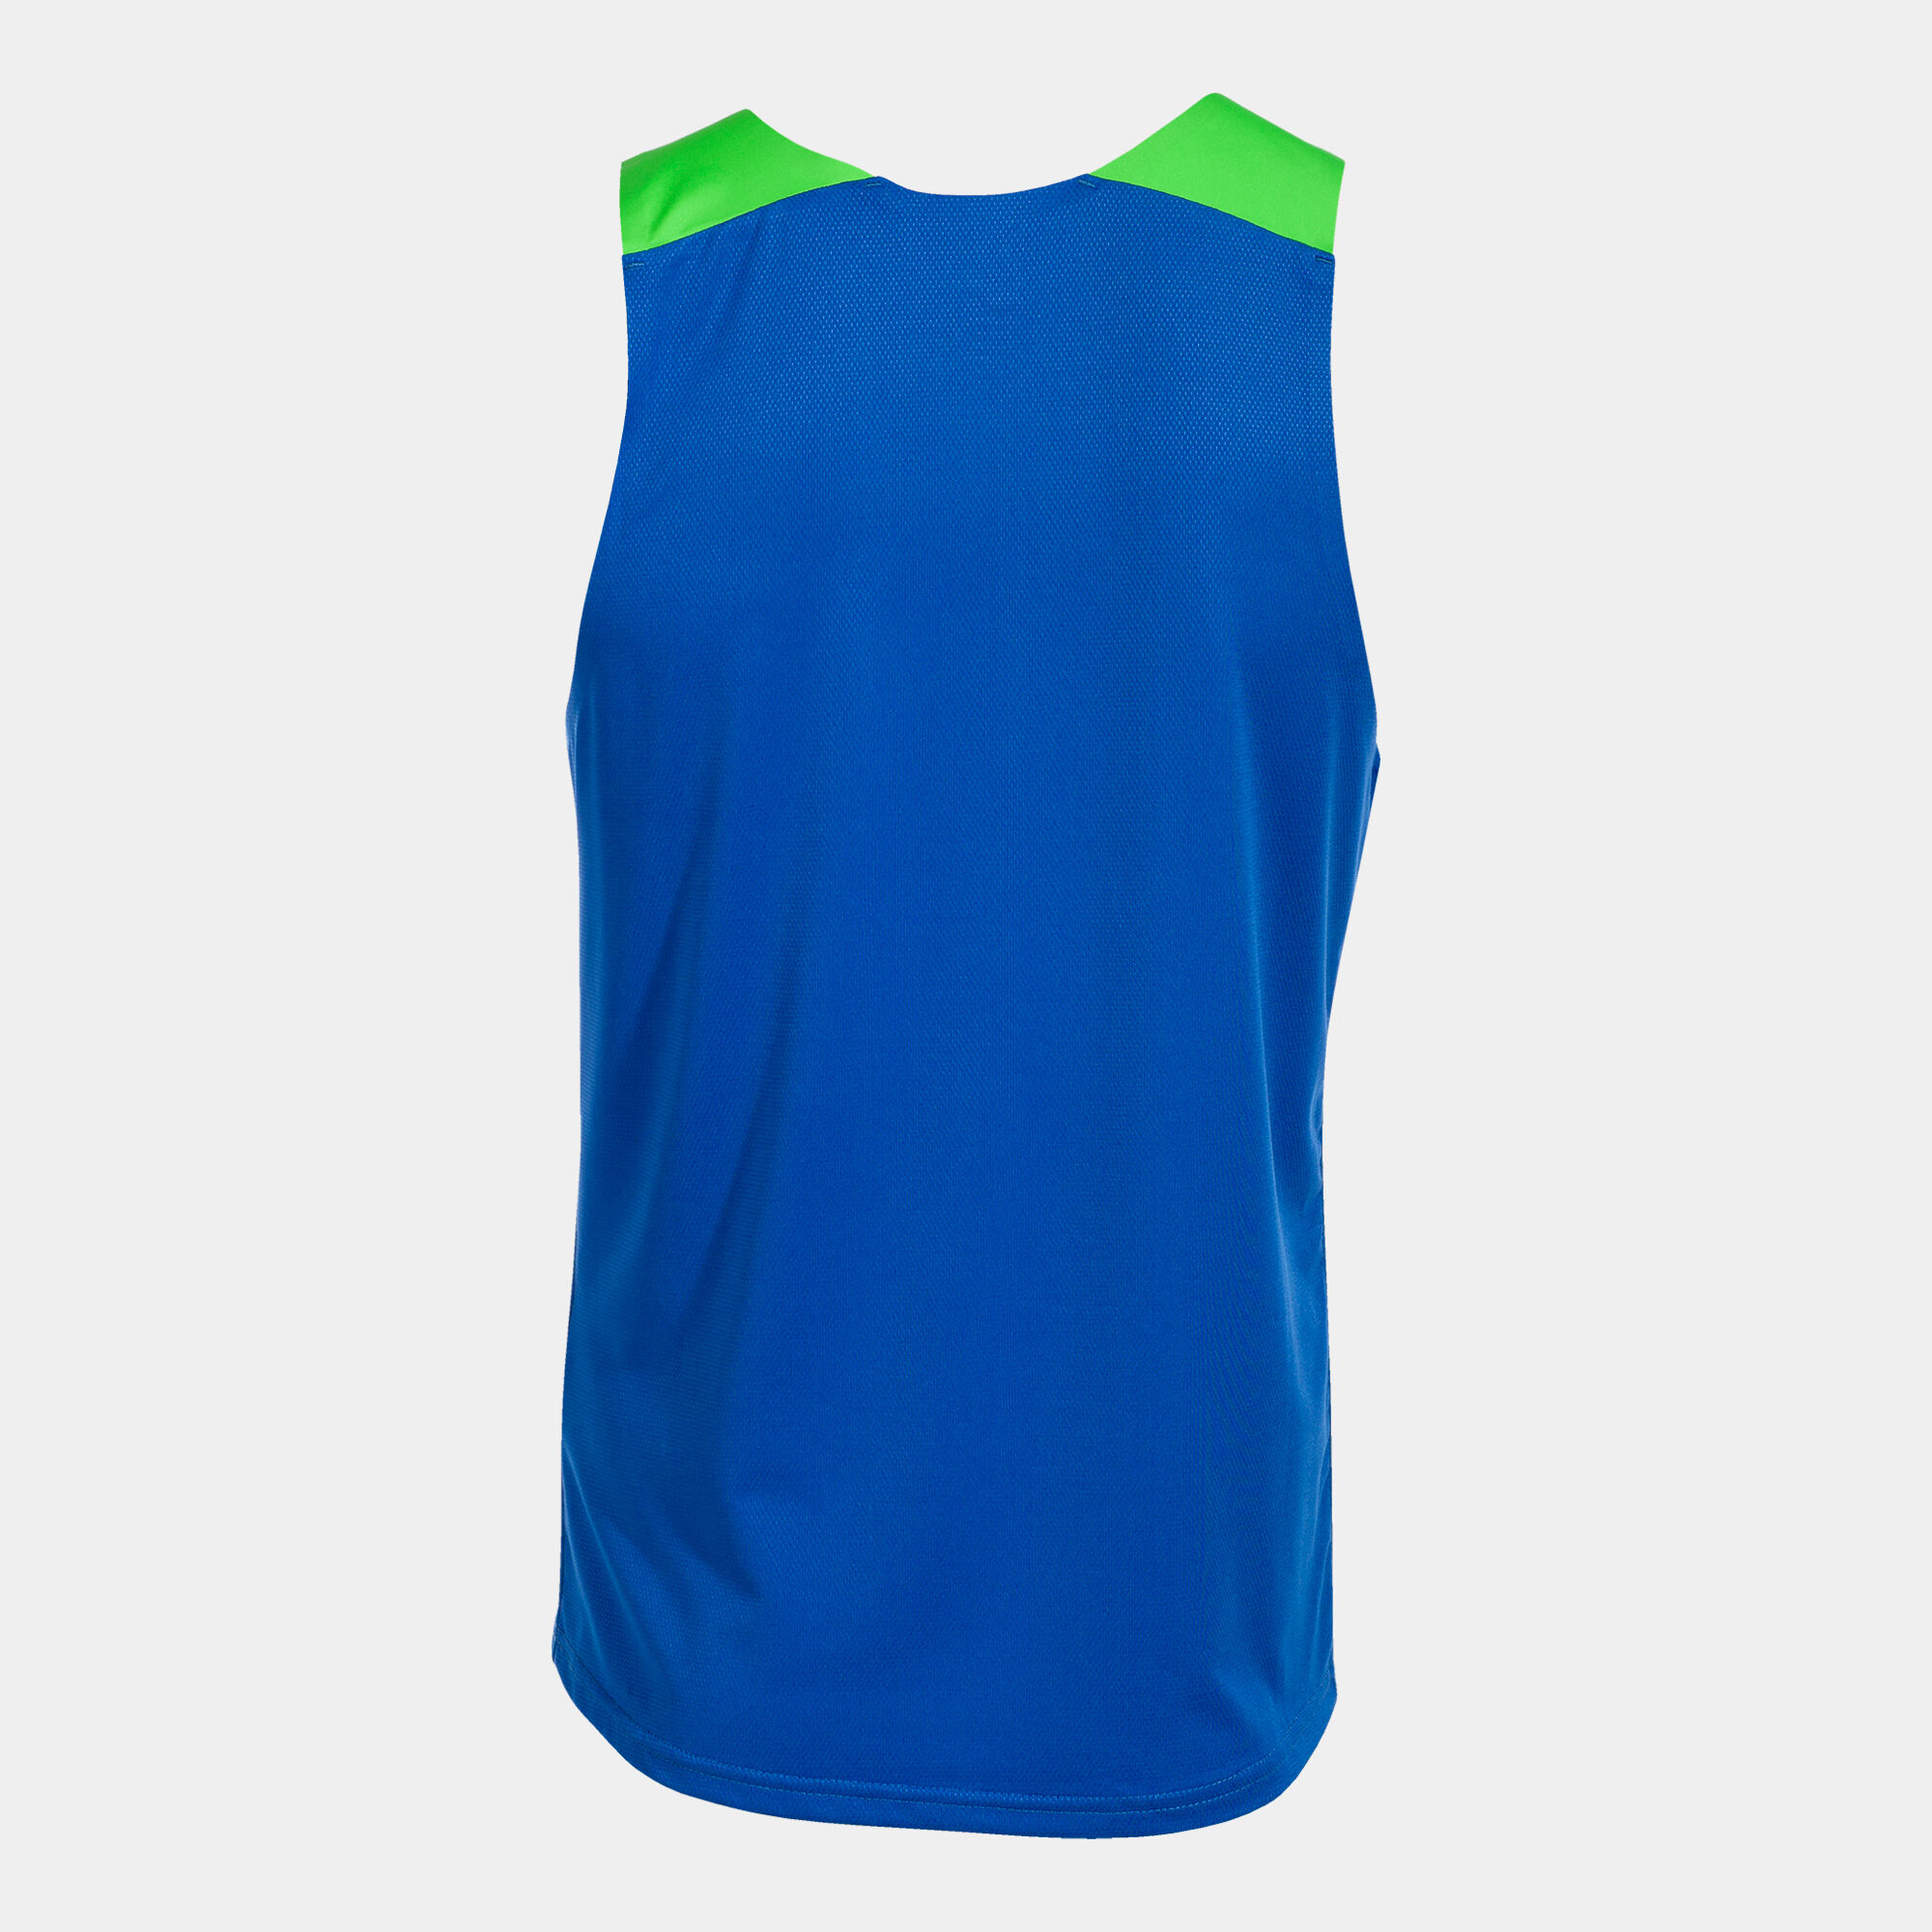 T-shirt de alça homem Elite X azul royal verde fluorescente